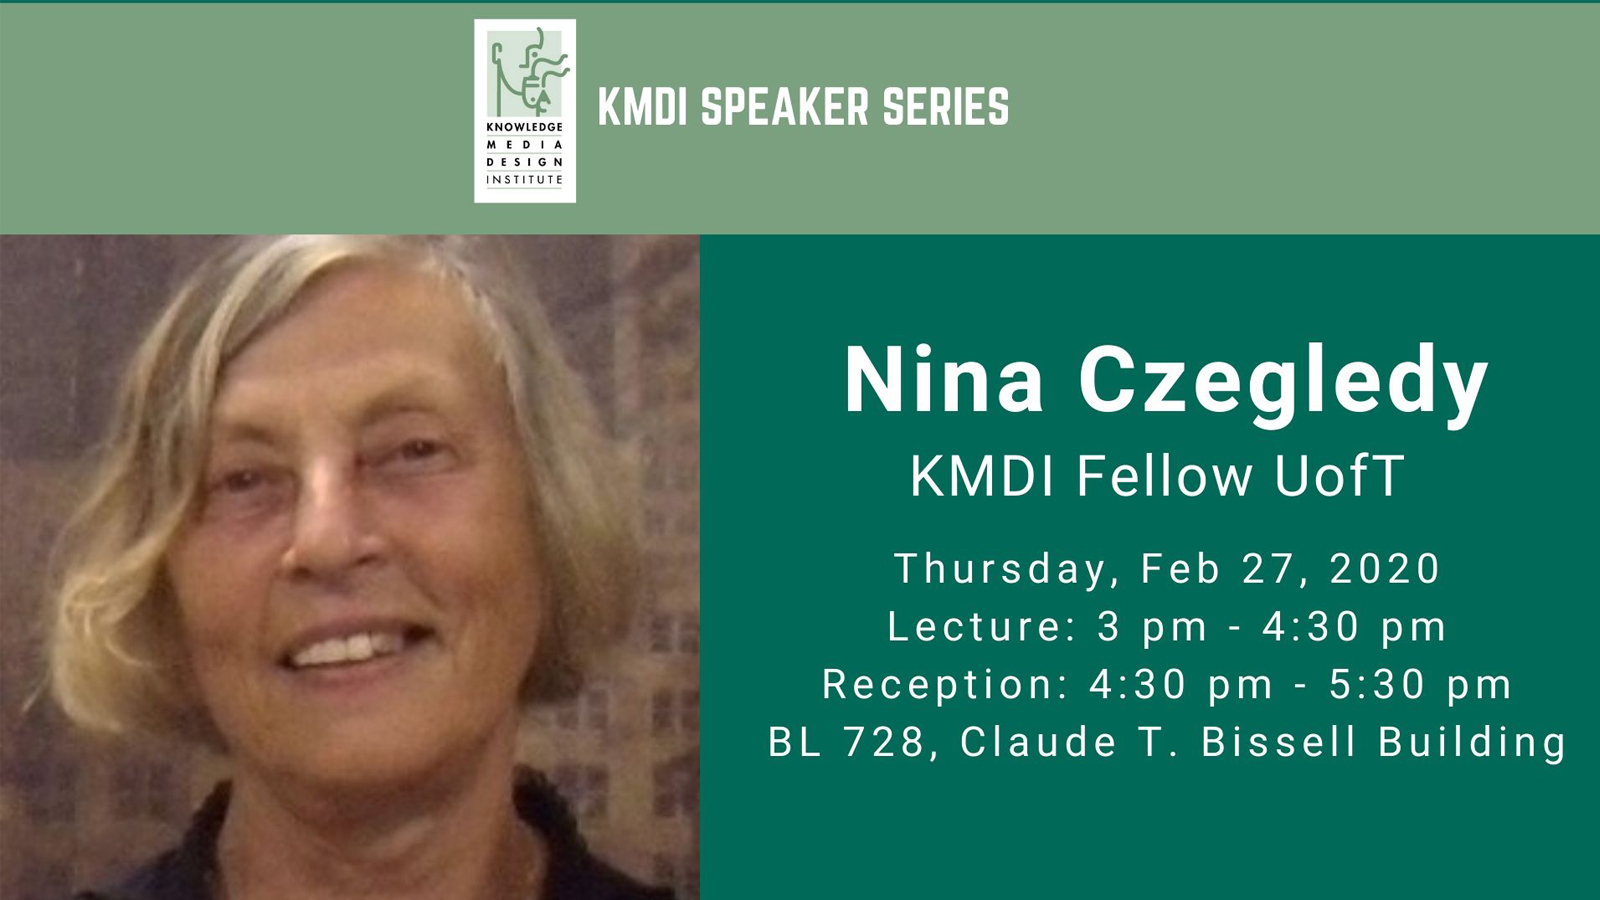 KMDI Speaker series - Nina Czegledy